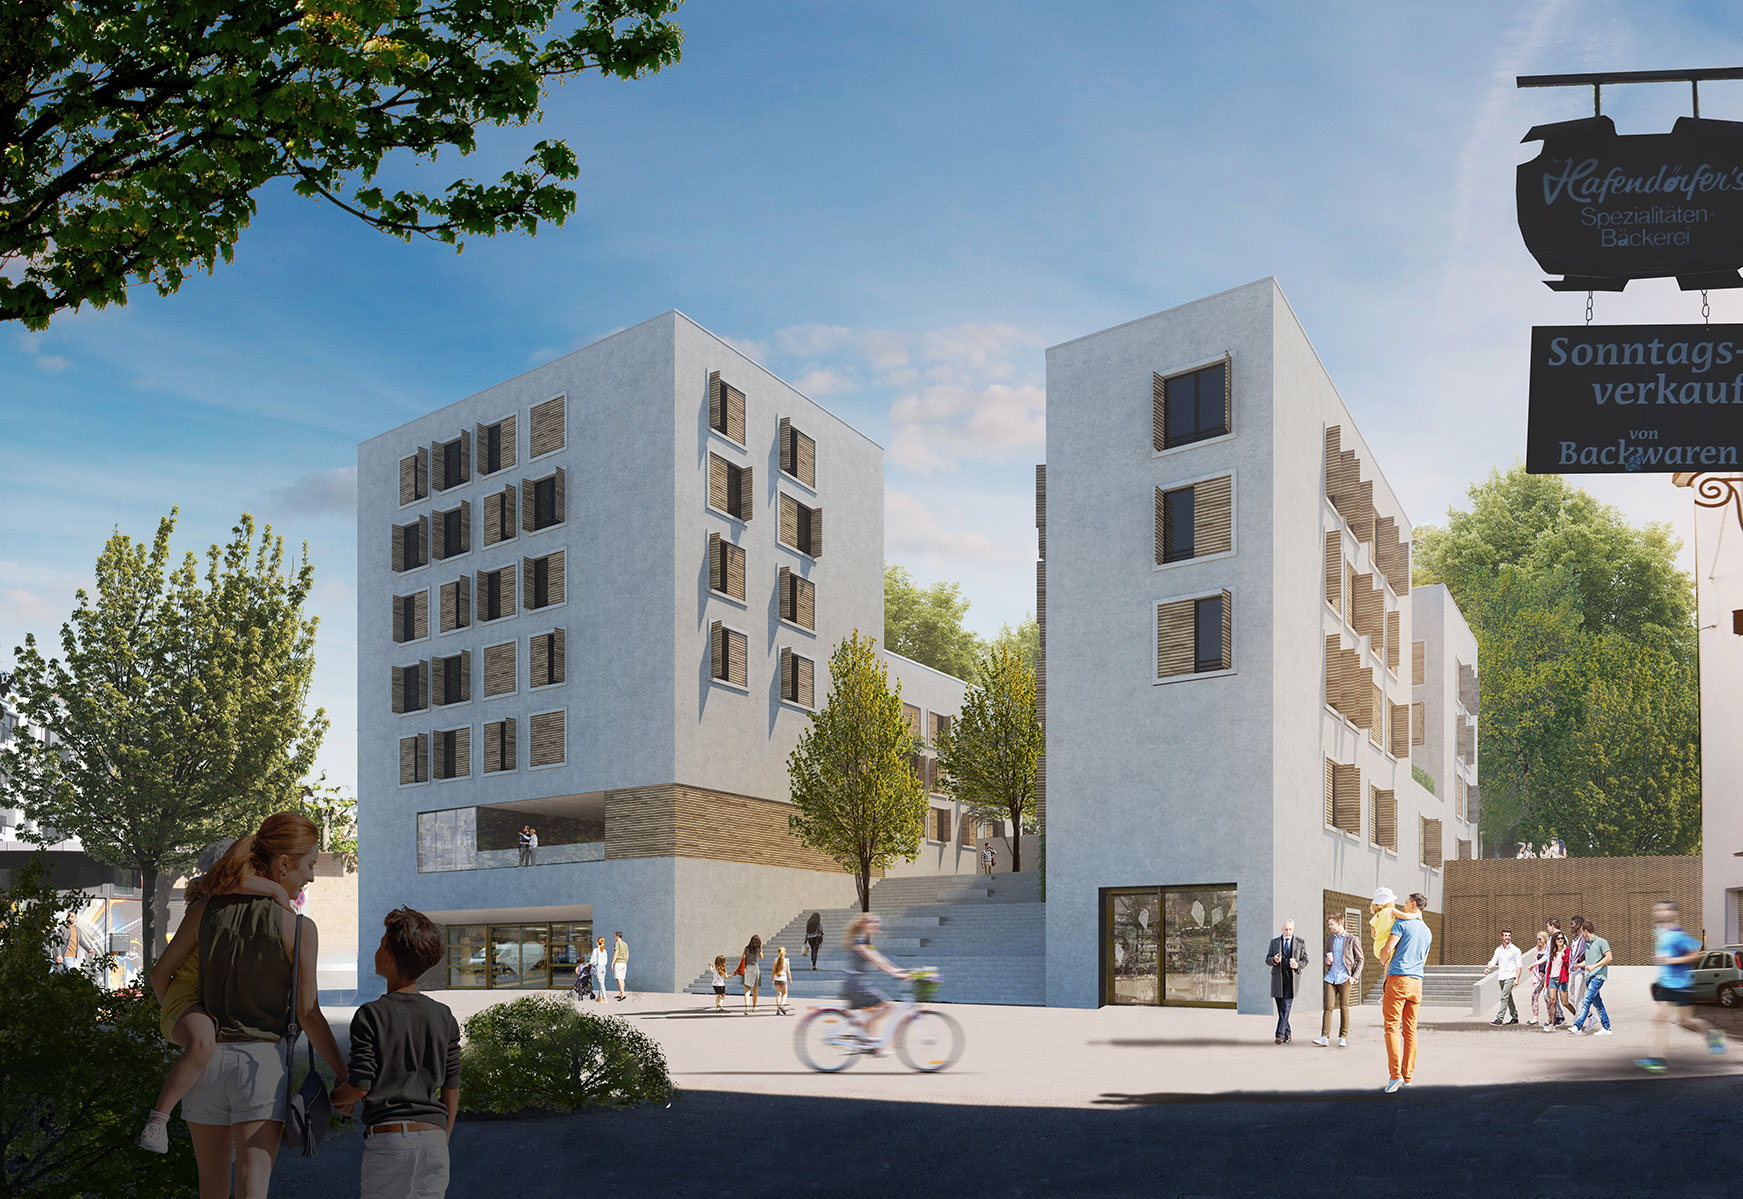 Visualisierung des Neubaus in der Hackstraße in Stuttgart. Zwei der vier hohen, schmalen Gebäude sind abgebildet. Sie haben weiße Putzfassaden und Fensterläden zum zuklappen aus Holz.